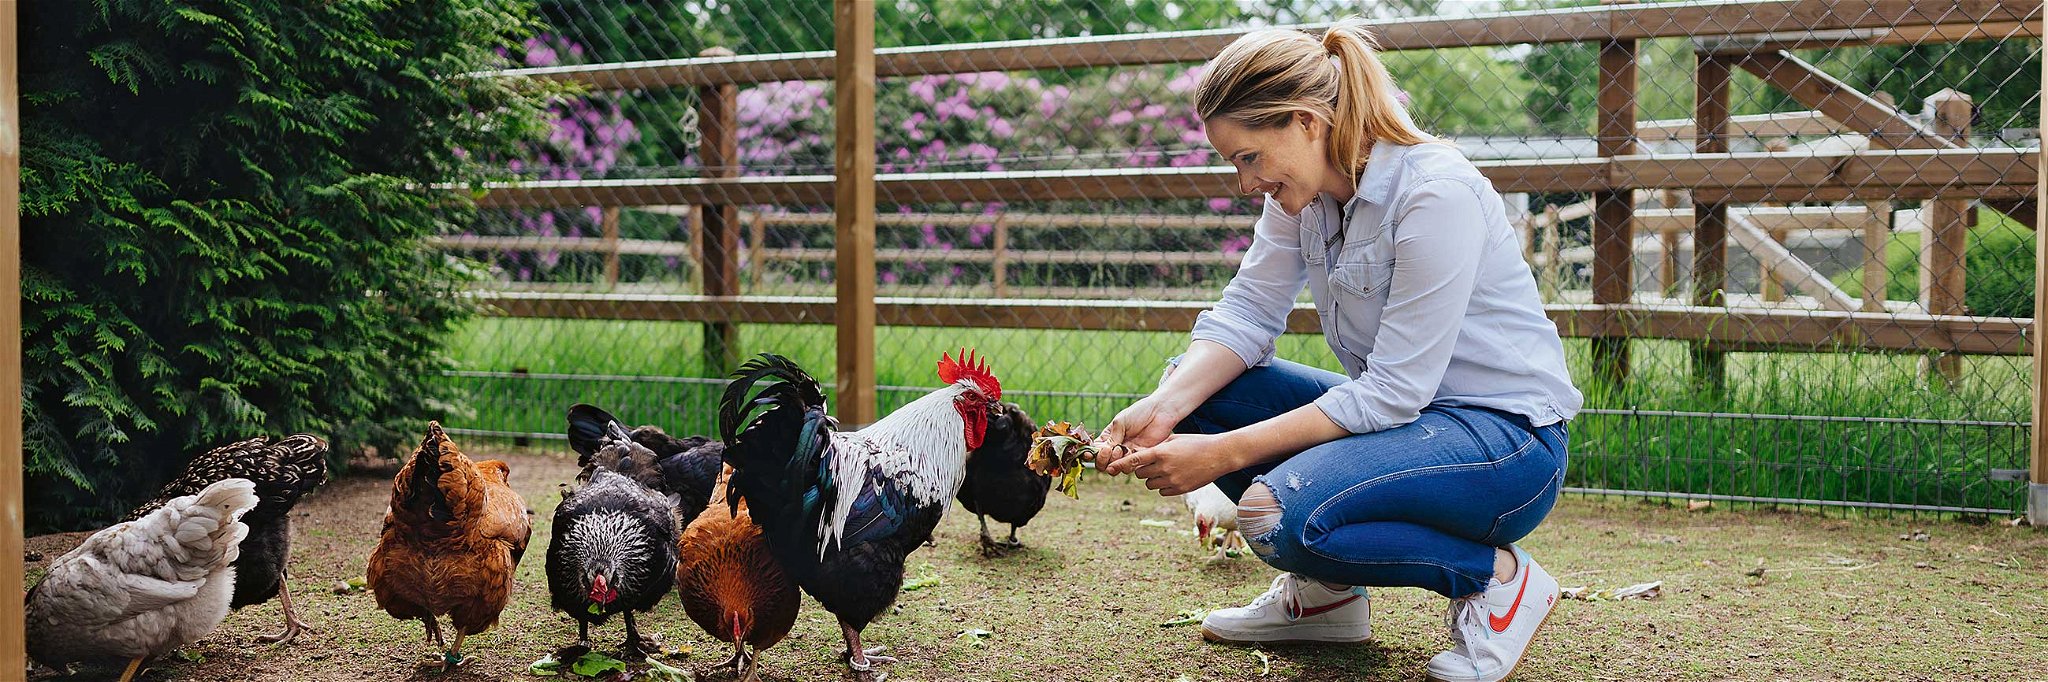 Vom Gemüse bis zu den eigenen Hühnern – Moderatorin Judith Rakers berichtet von ihren Erfahrungen zur Selbstversorgung.